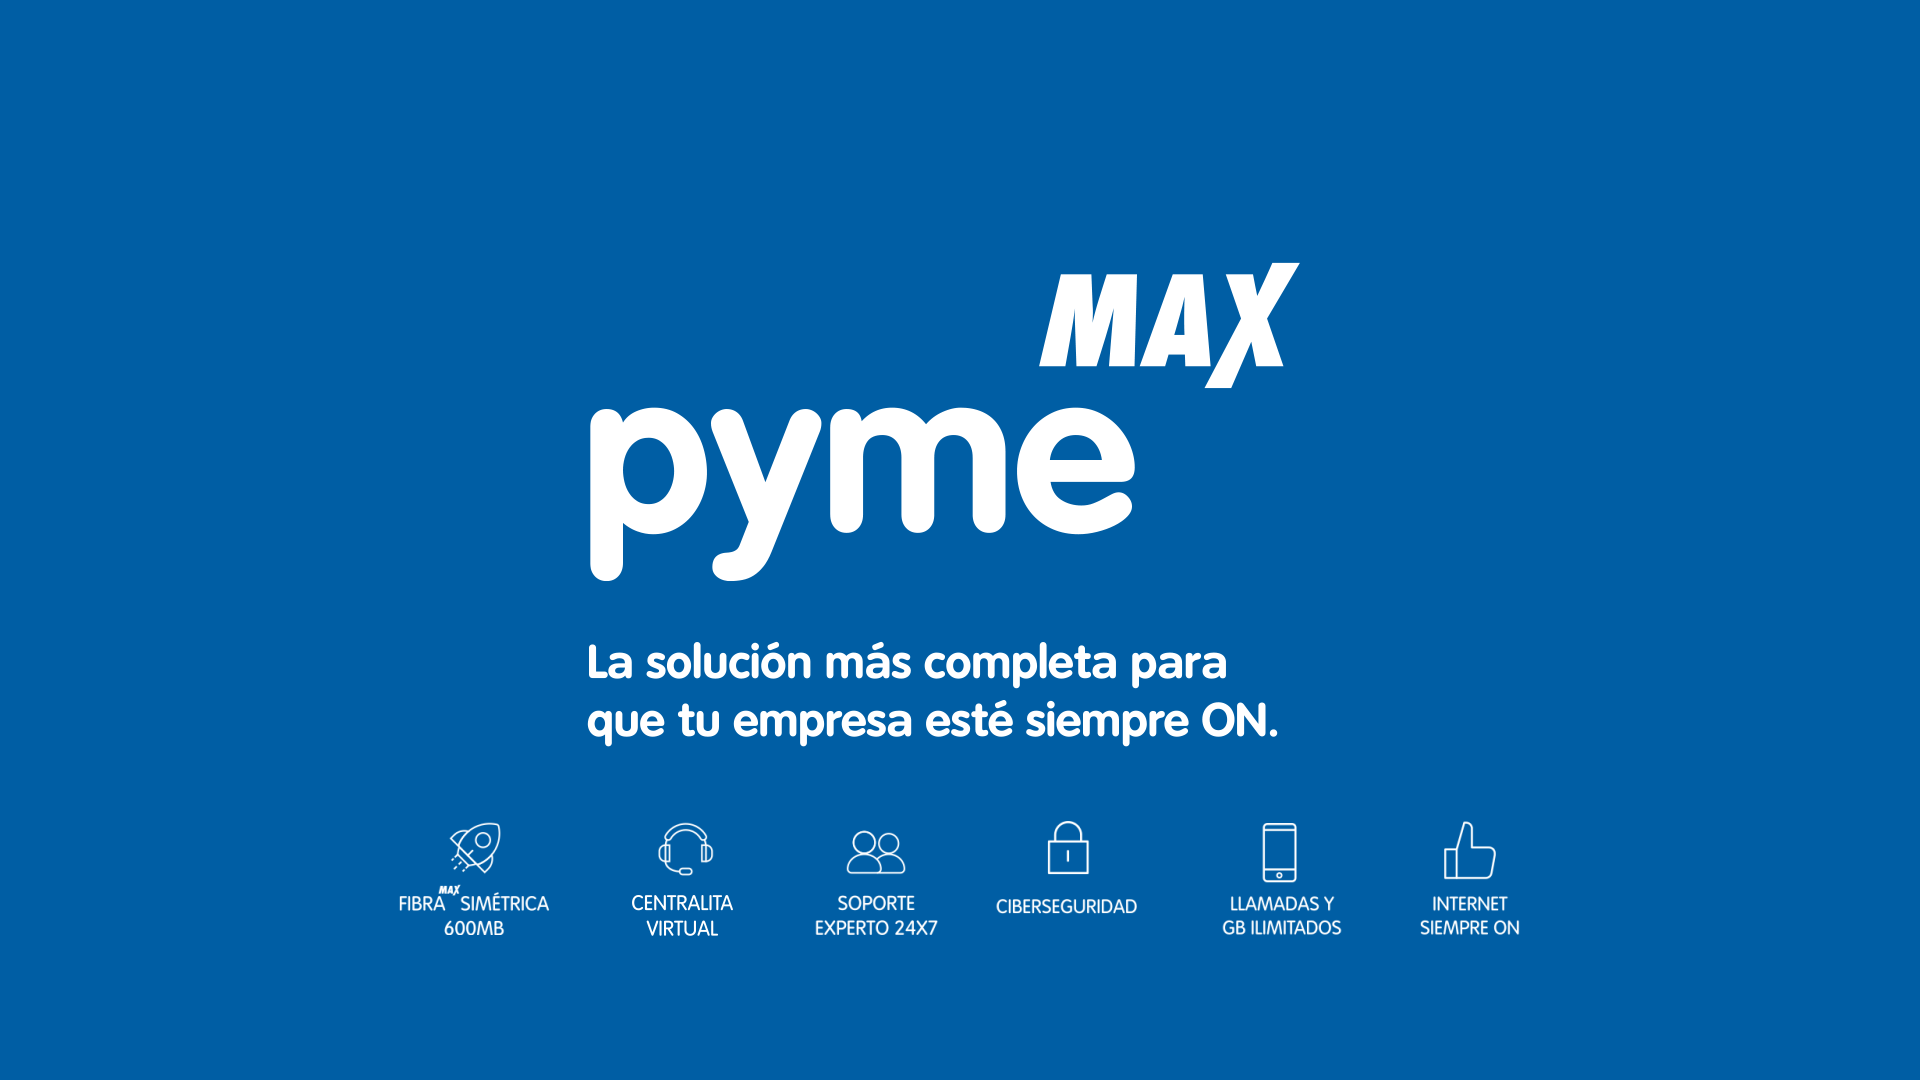  pyme MAX de Telecable